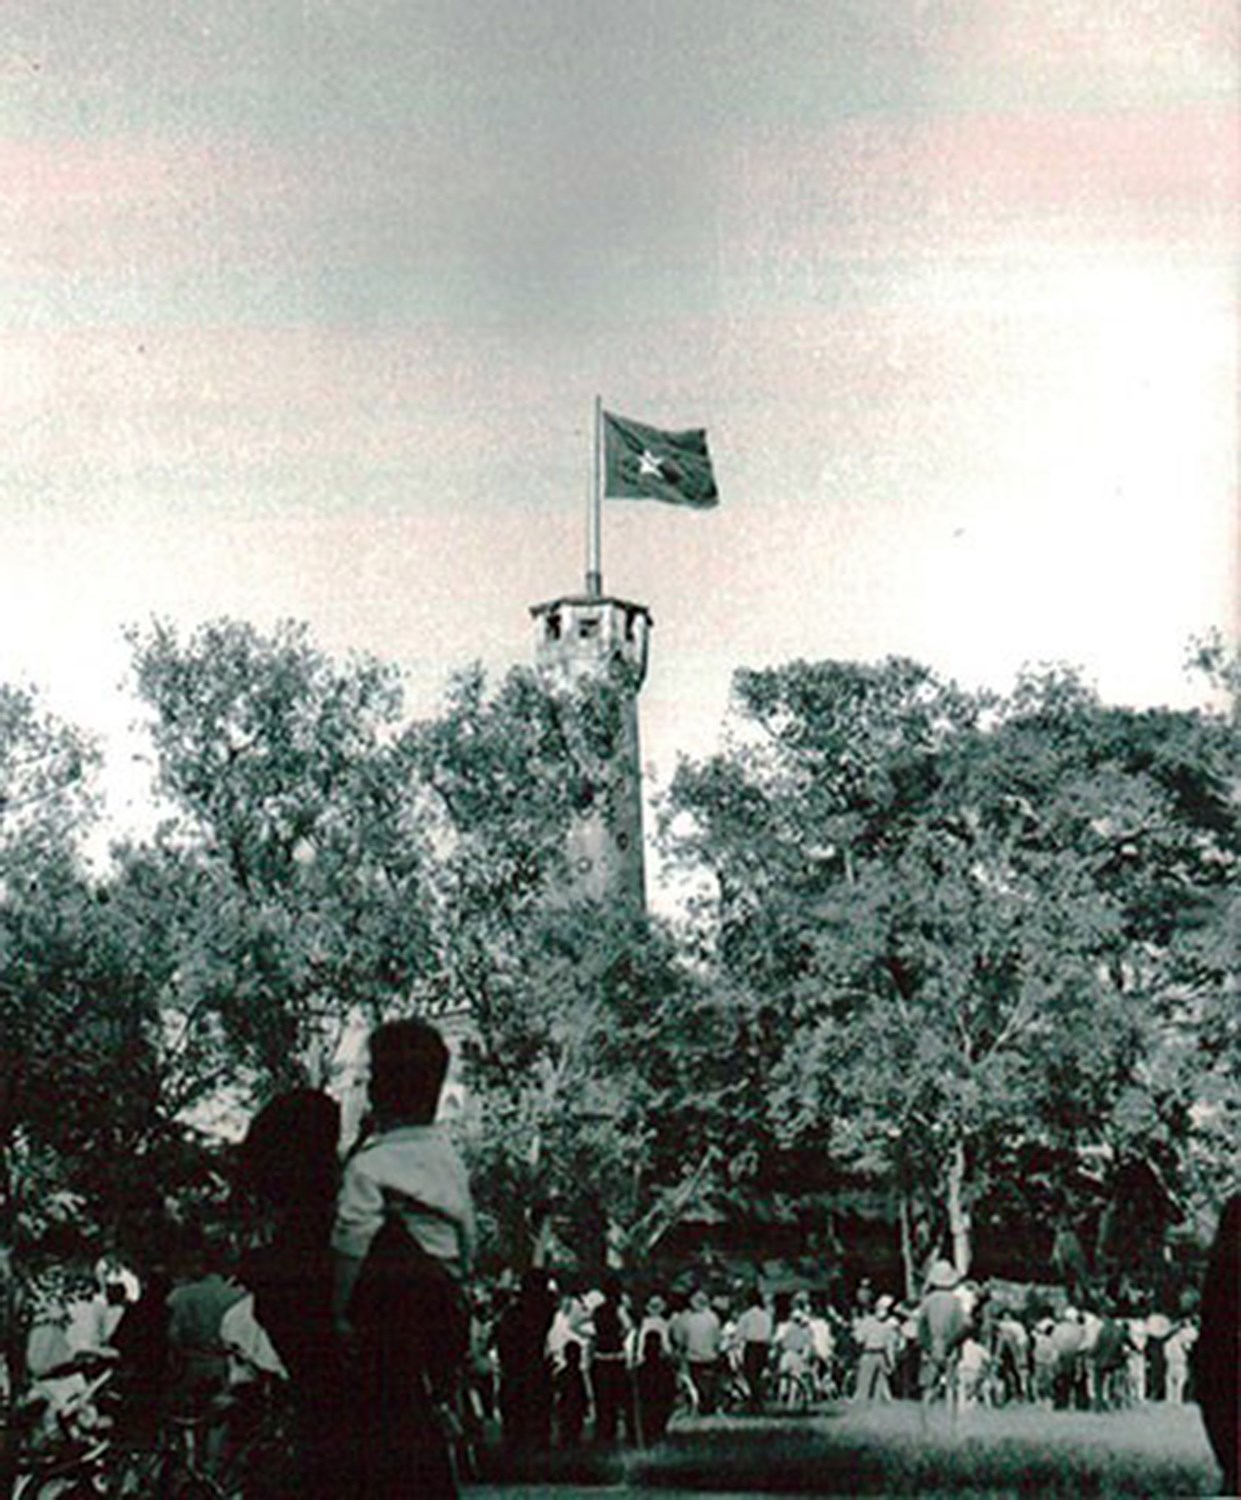  Lá cờ Tổ quốc tung bay trên đỉnh cột cờ Hà Nội, ngày 10/10/1954 